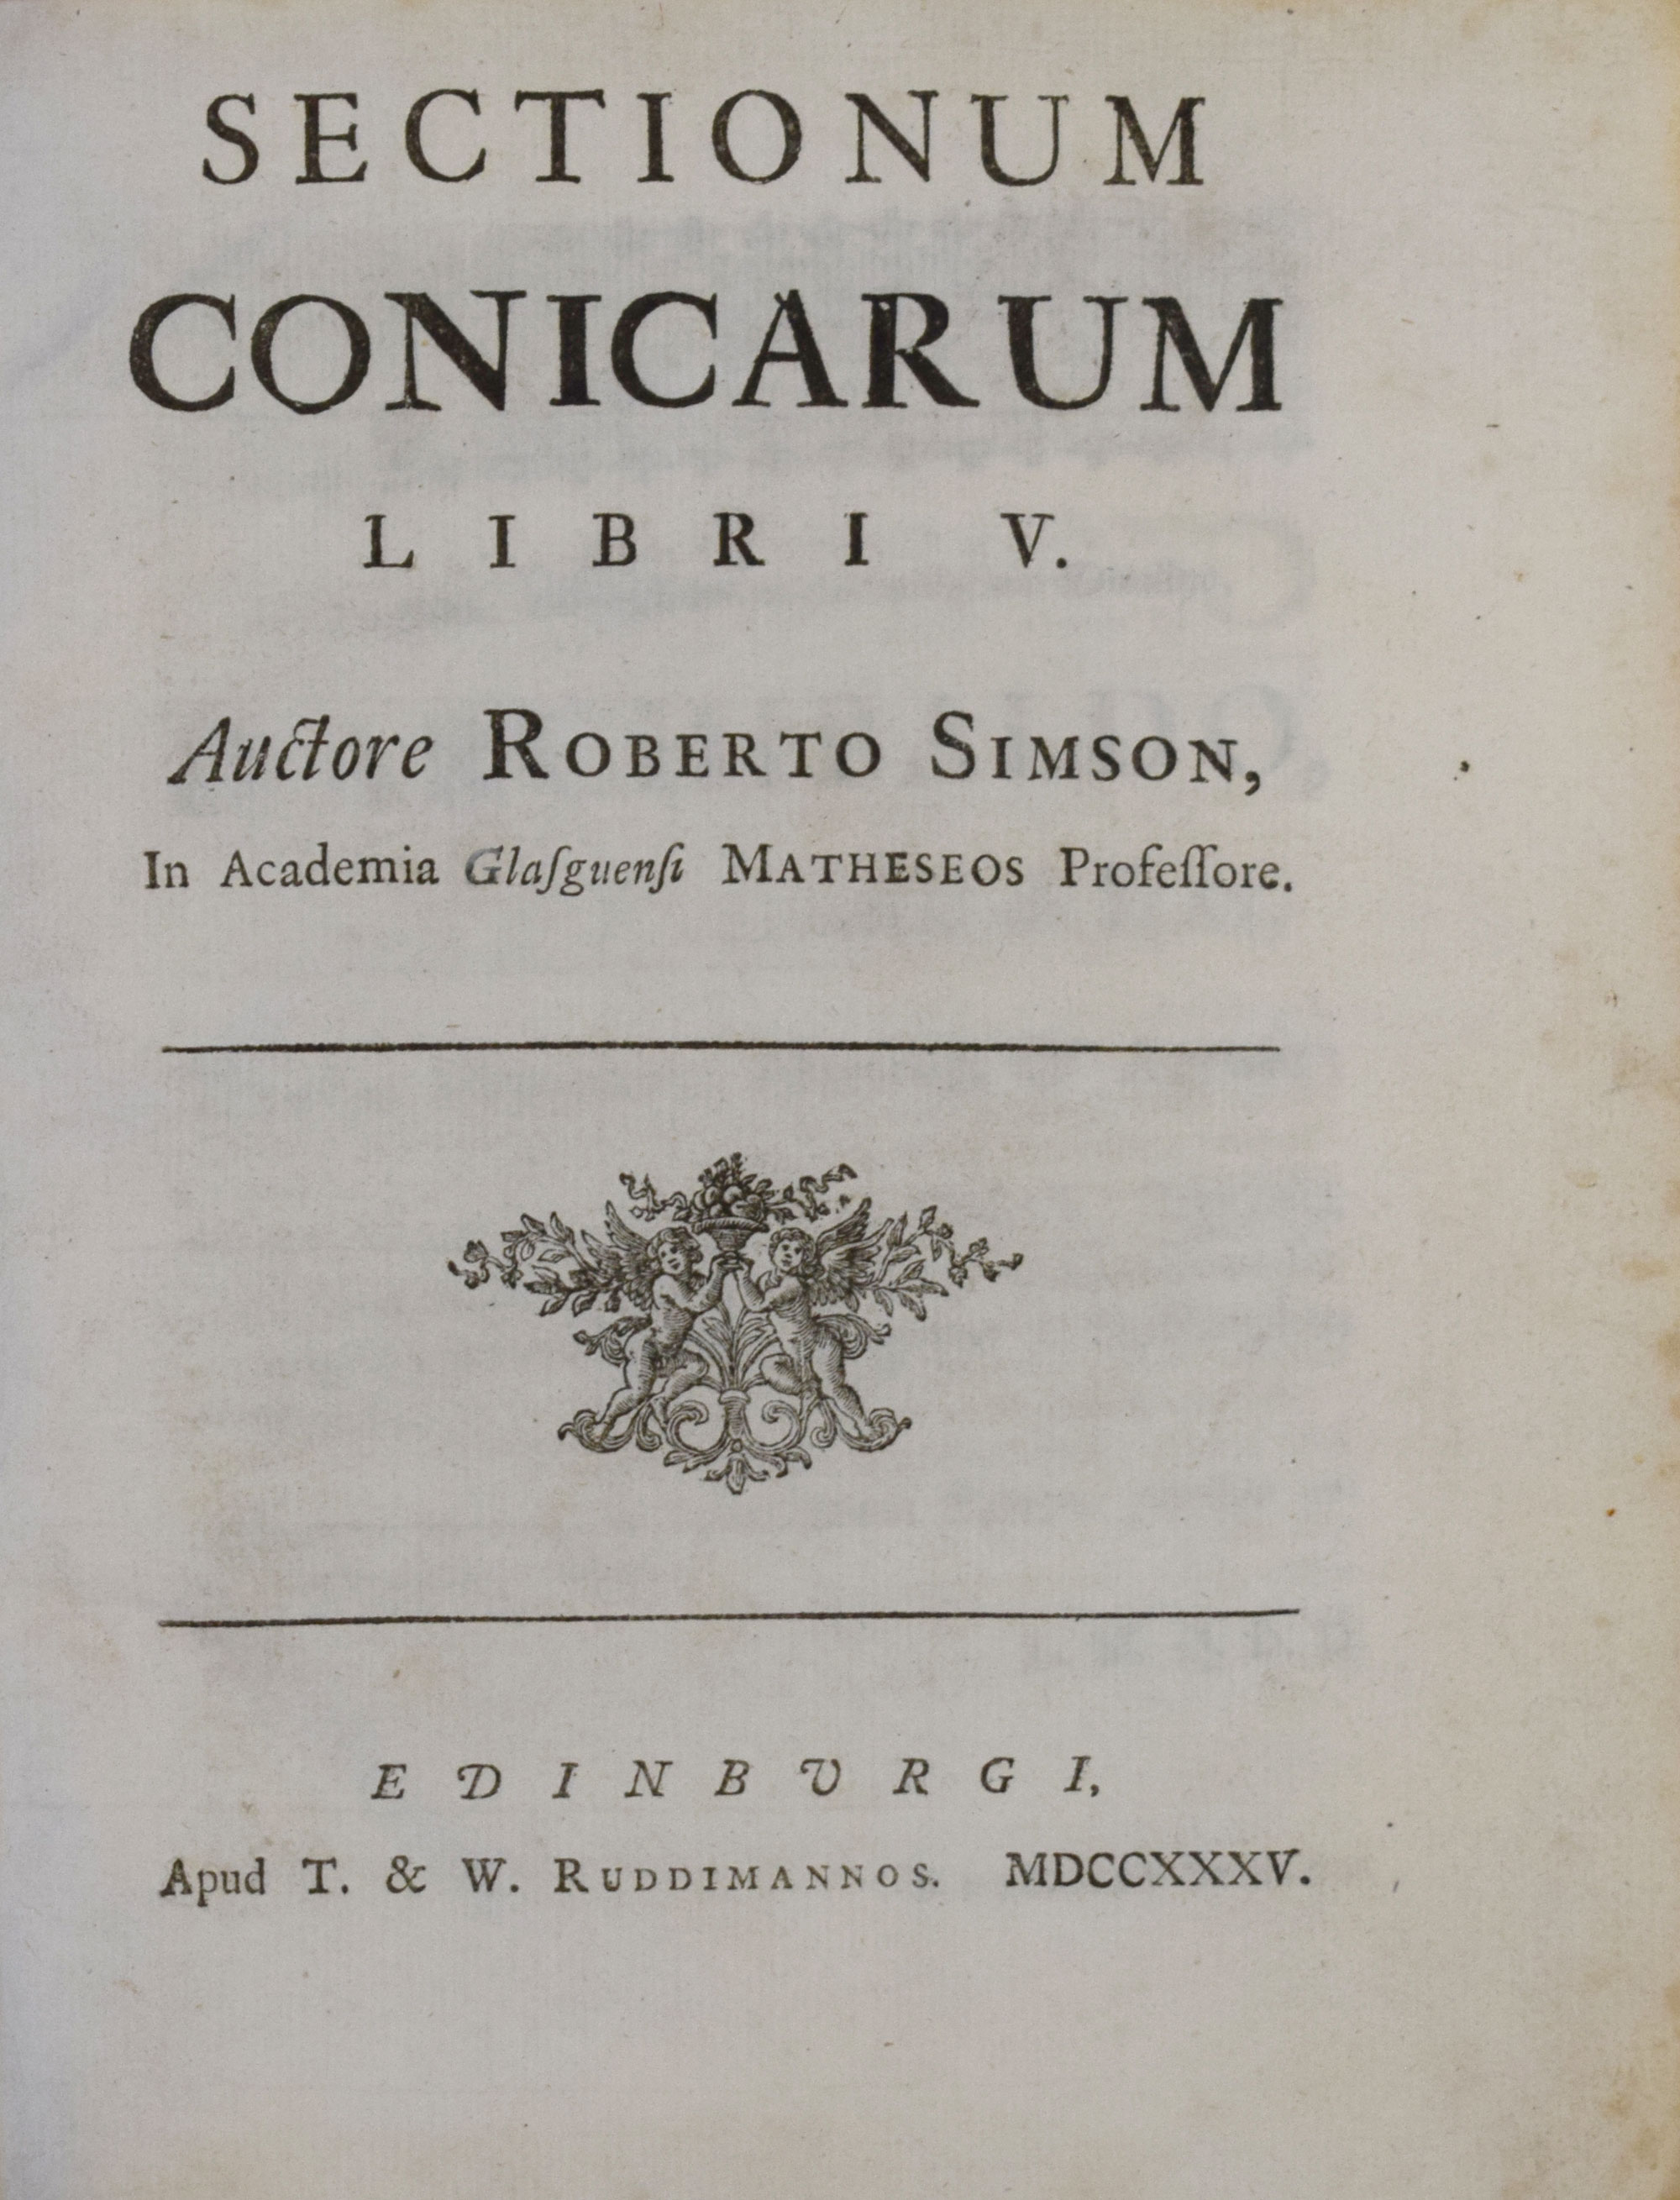 Sectionum Conicarum. Libri V.